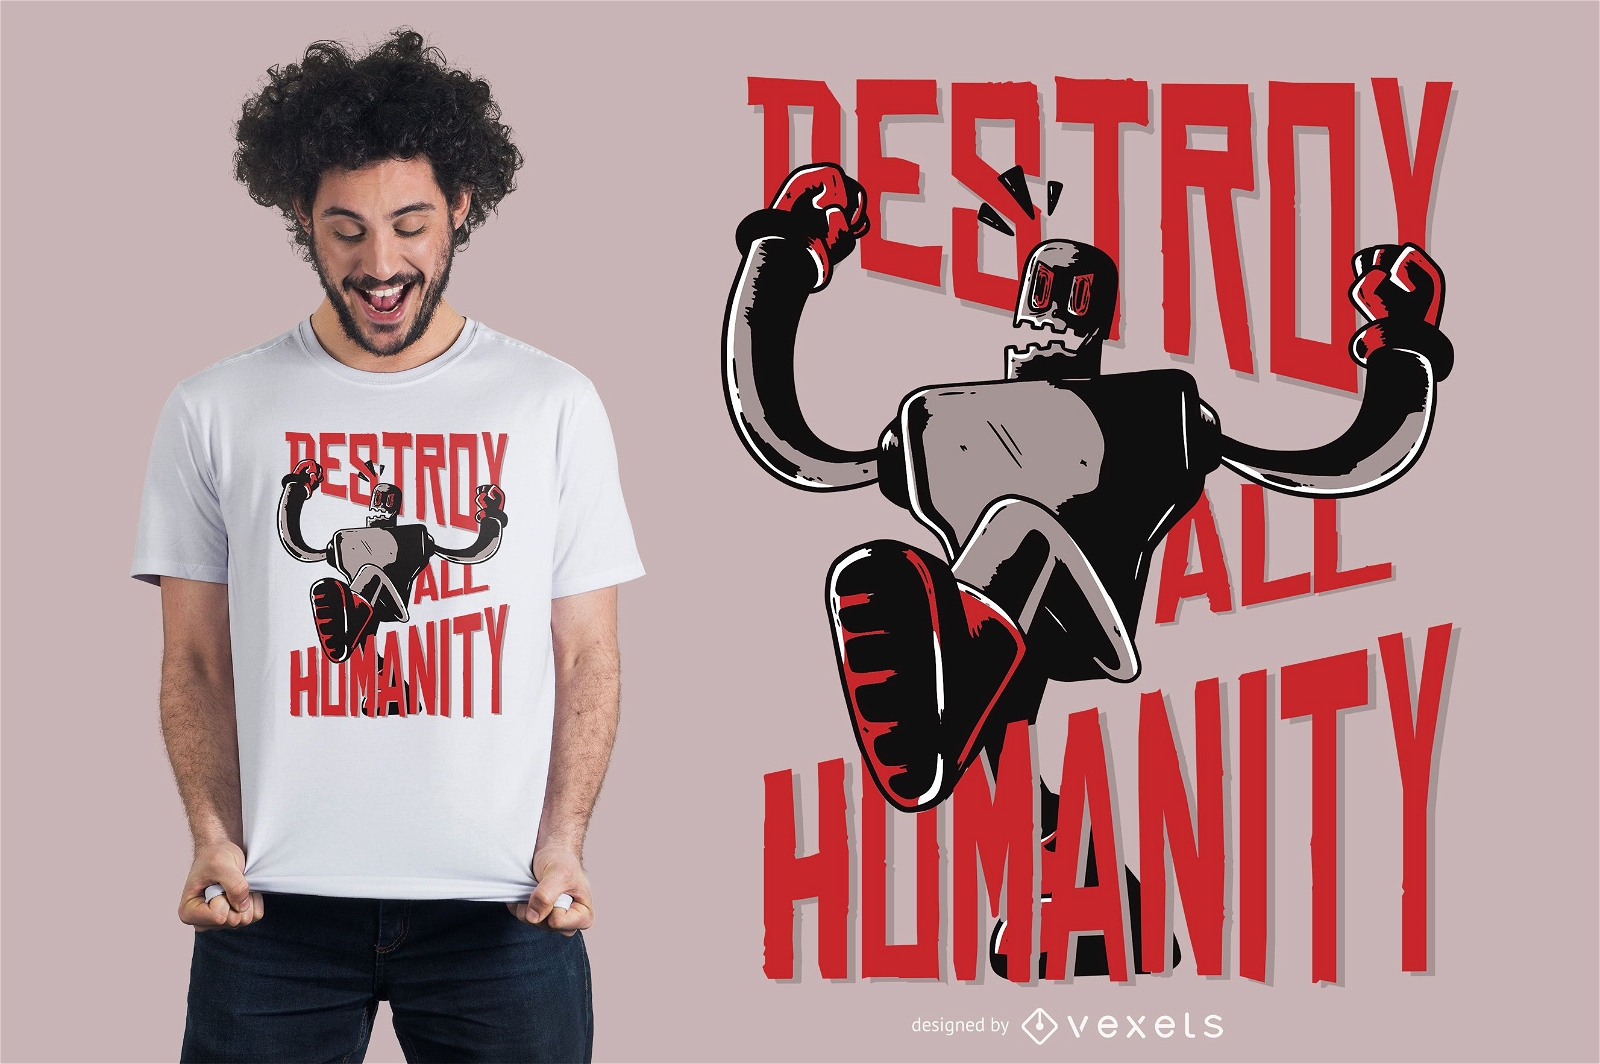 Robot destroy humanity t-shirt design